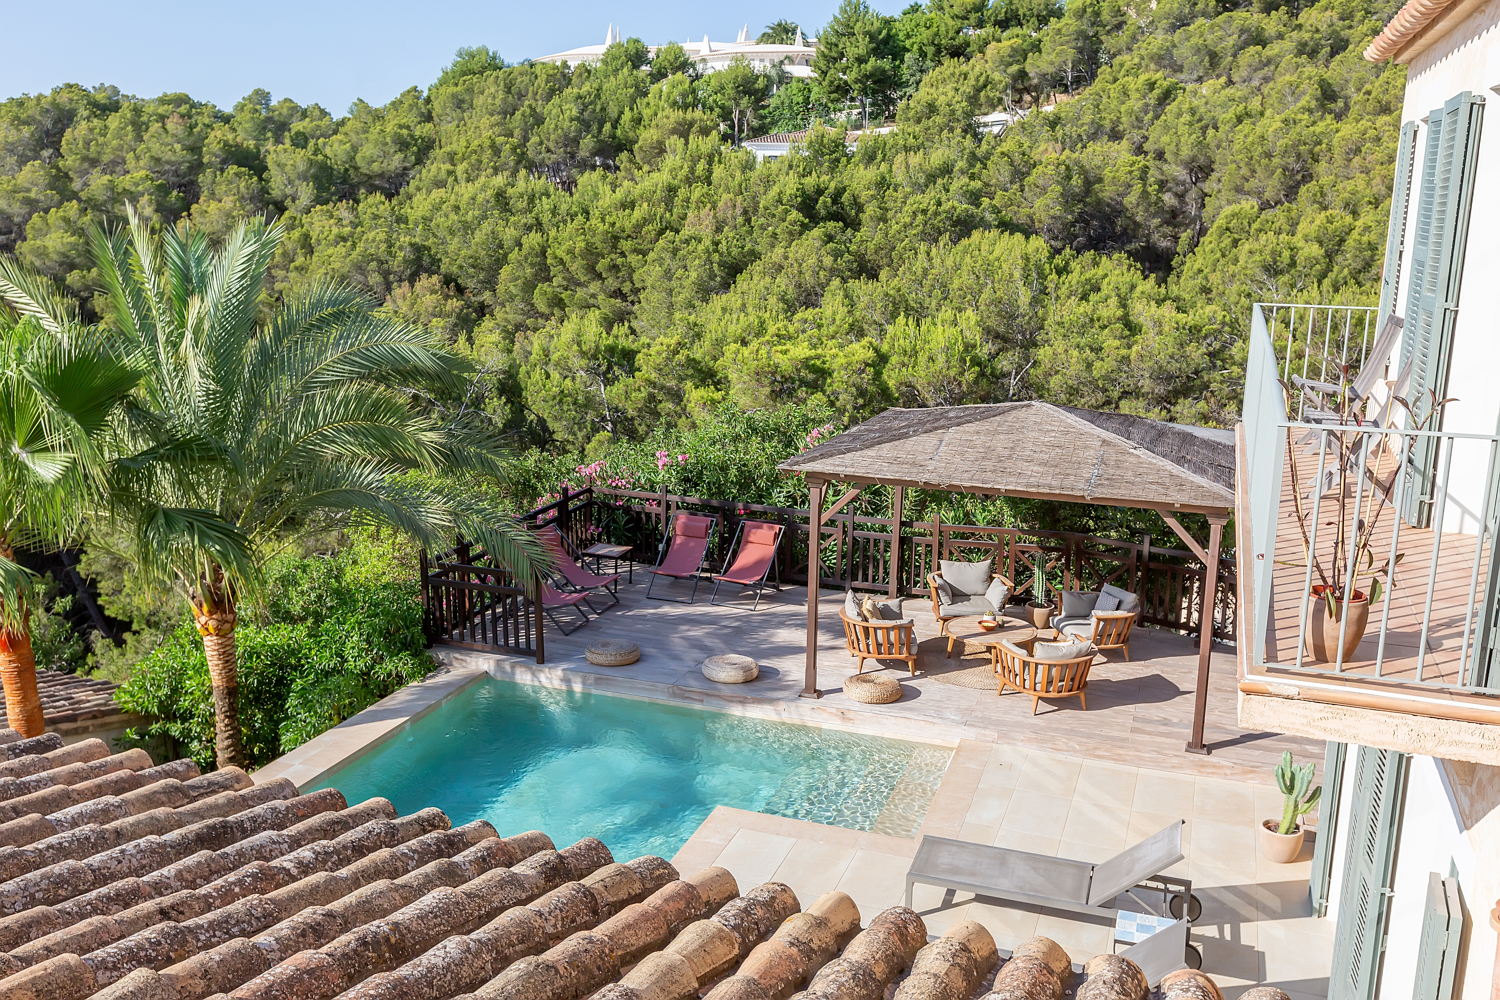 Superb villa with sea views of Camp de Mar